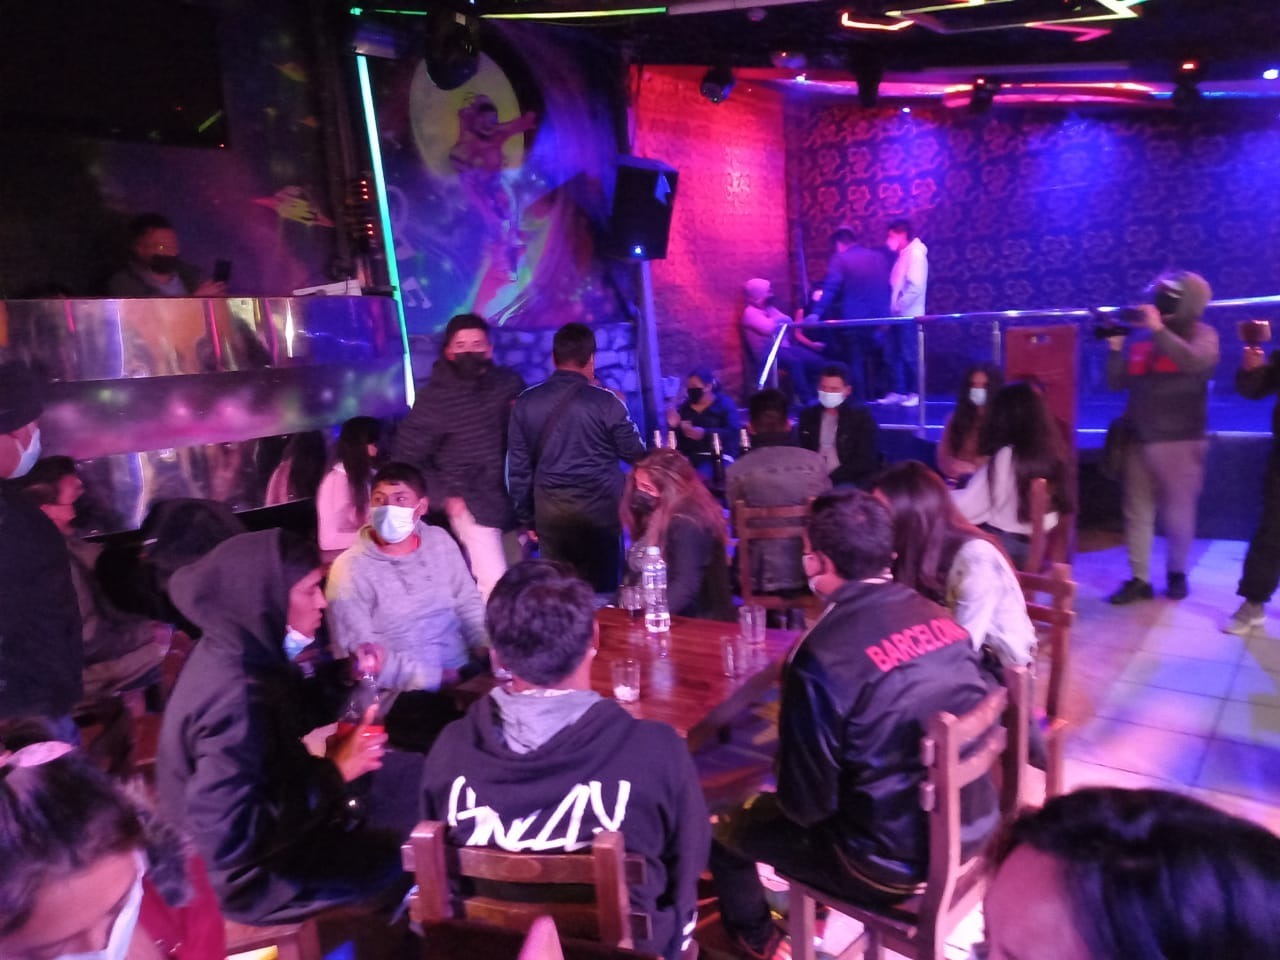 Los infractores libaban alcohol al interior de la discoteca. Foto: referencial/ PNP